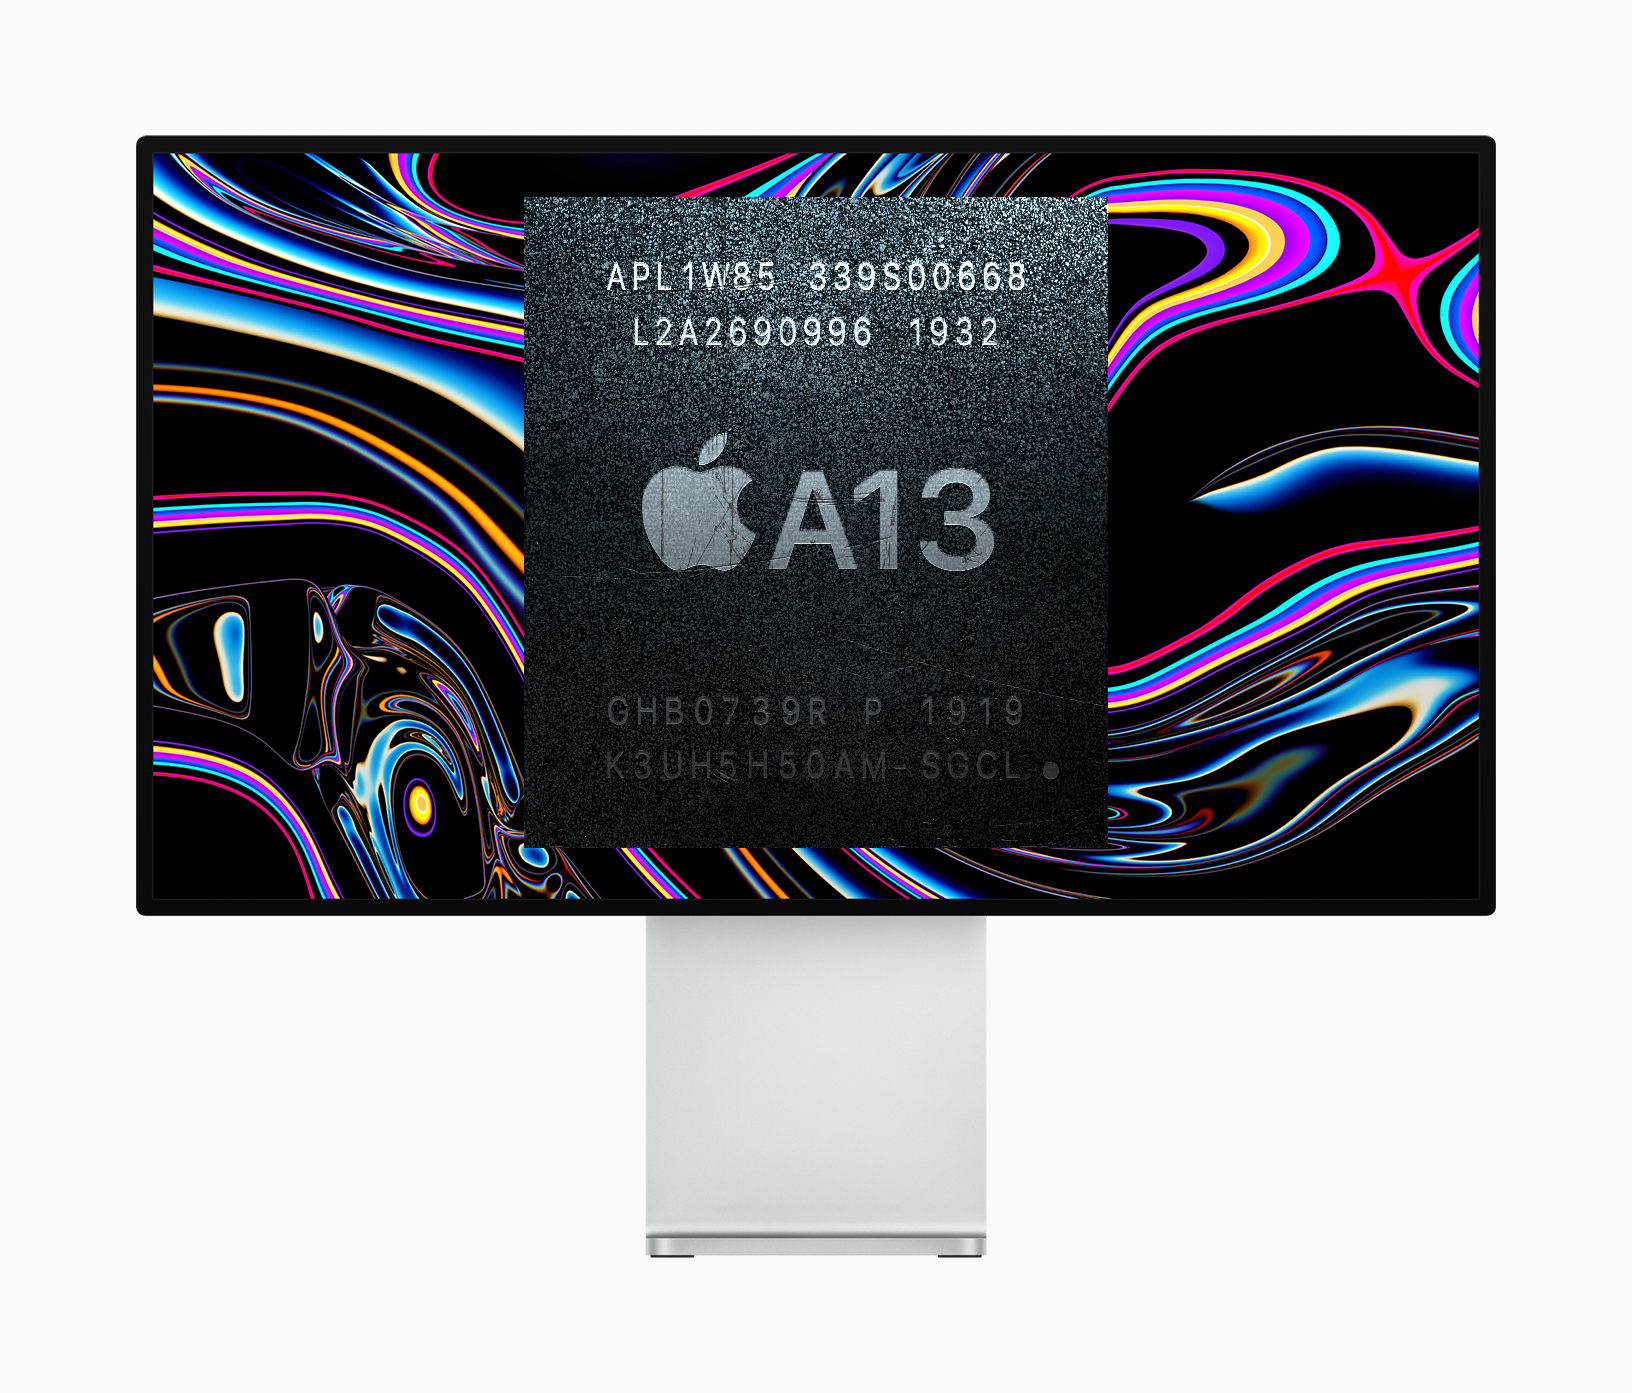 Monitor infundido A13 que está siendo probado por Apple